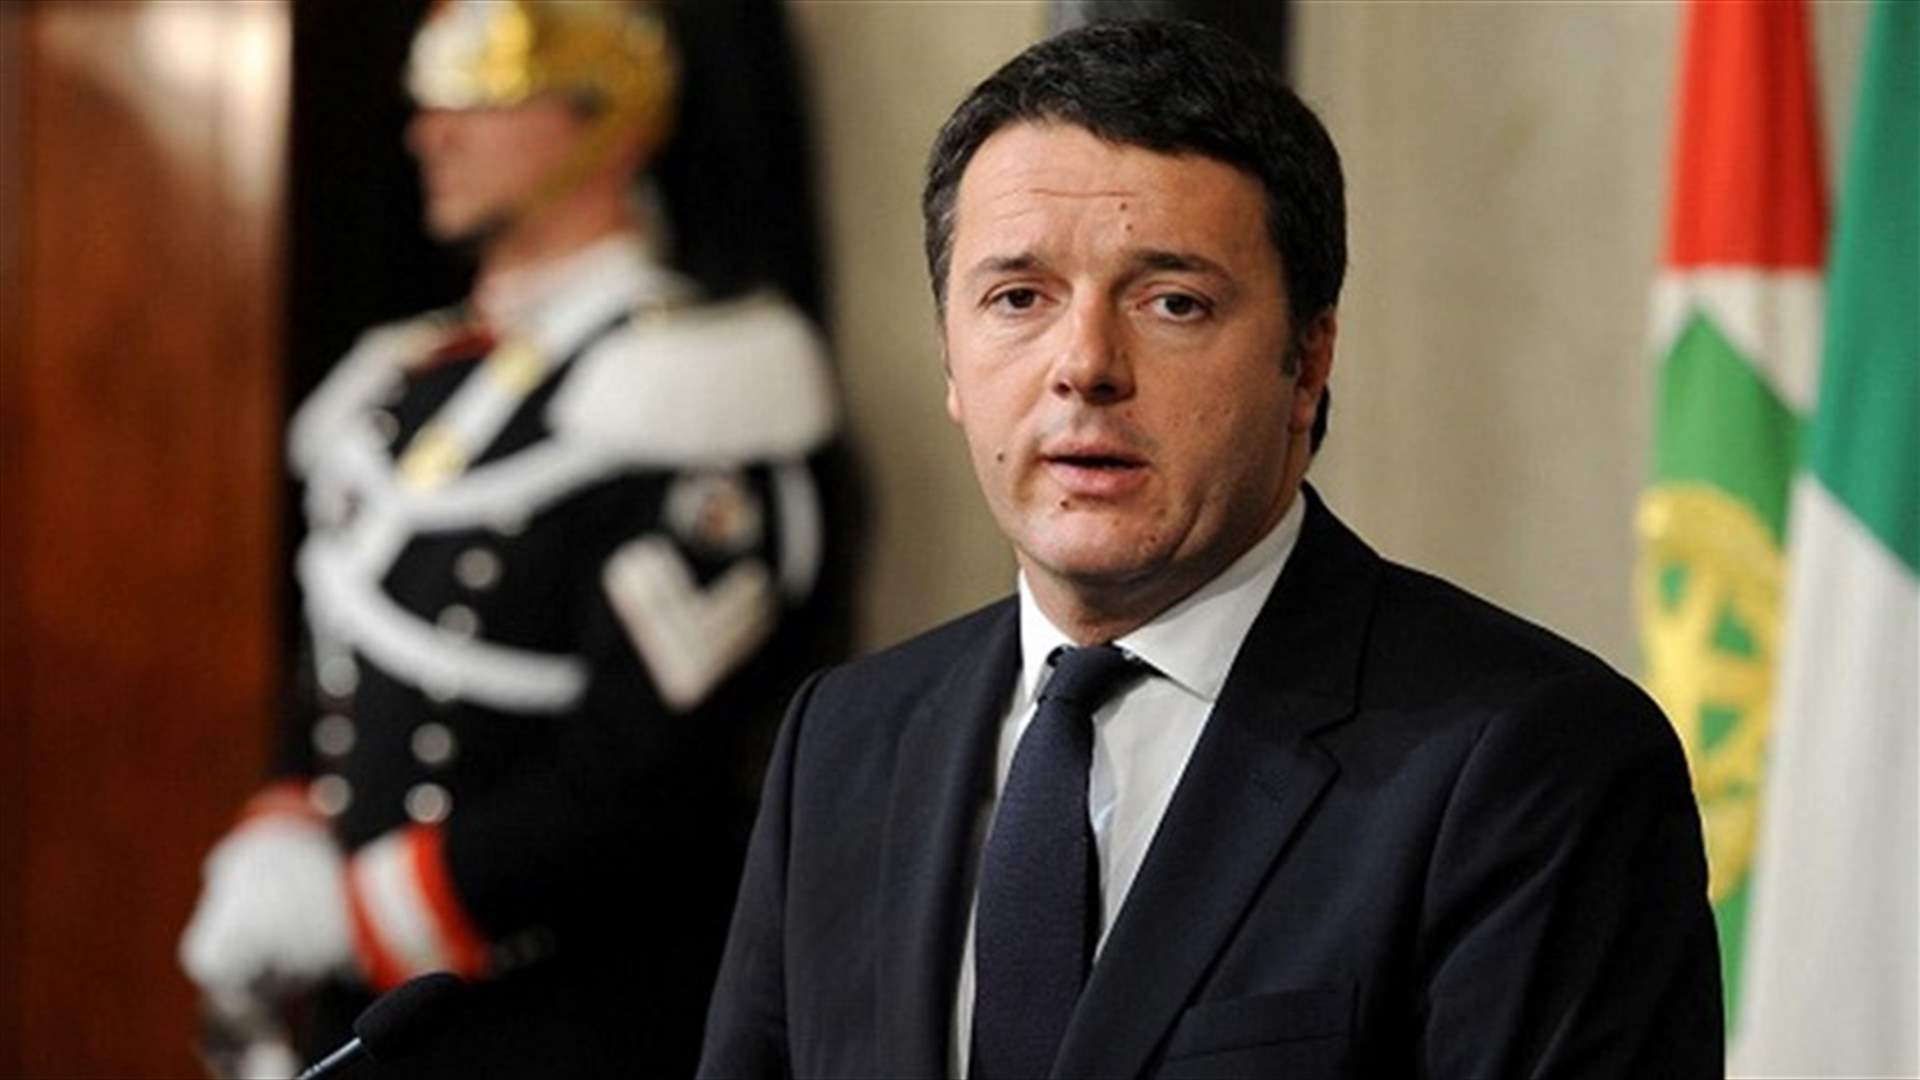 رئيس وزراء ايطاليا يدعو لاقناع المترددين بالتصويت للاصلاحات التي اقترحها